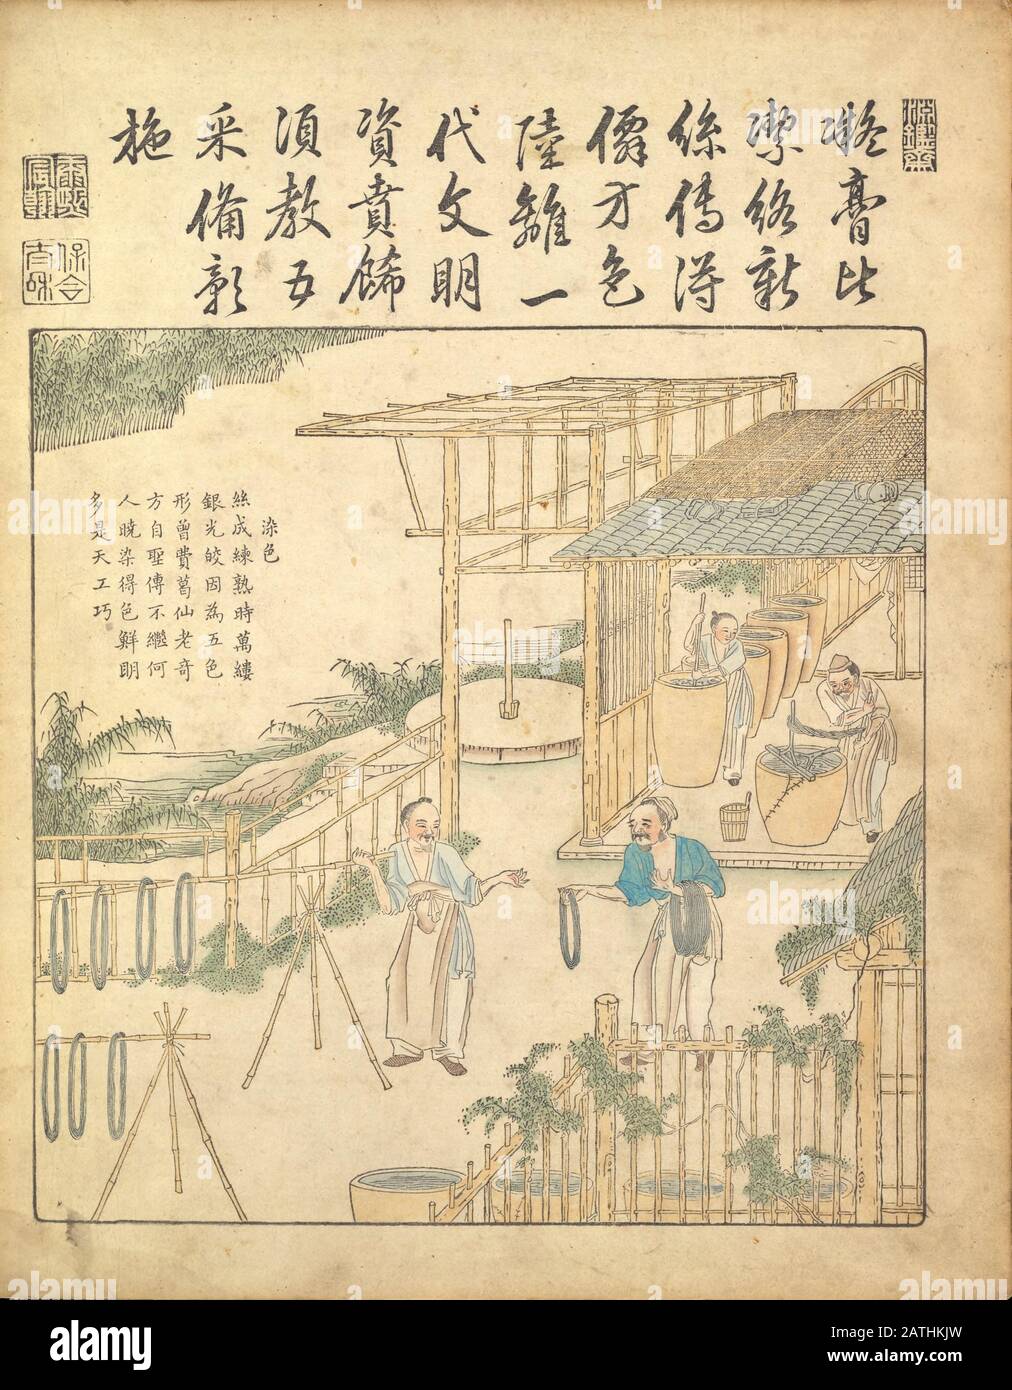 Ancient 17th century Chinese art Silk production Warping and weaving silk From Yu zhi geng zhi tu by Jiao, Bingzhen, 1696 Stock Photo